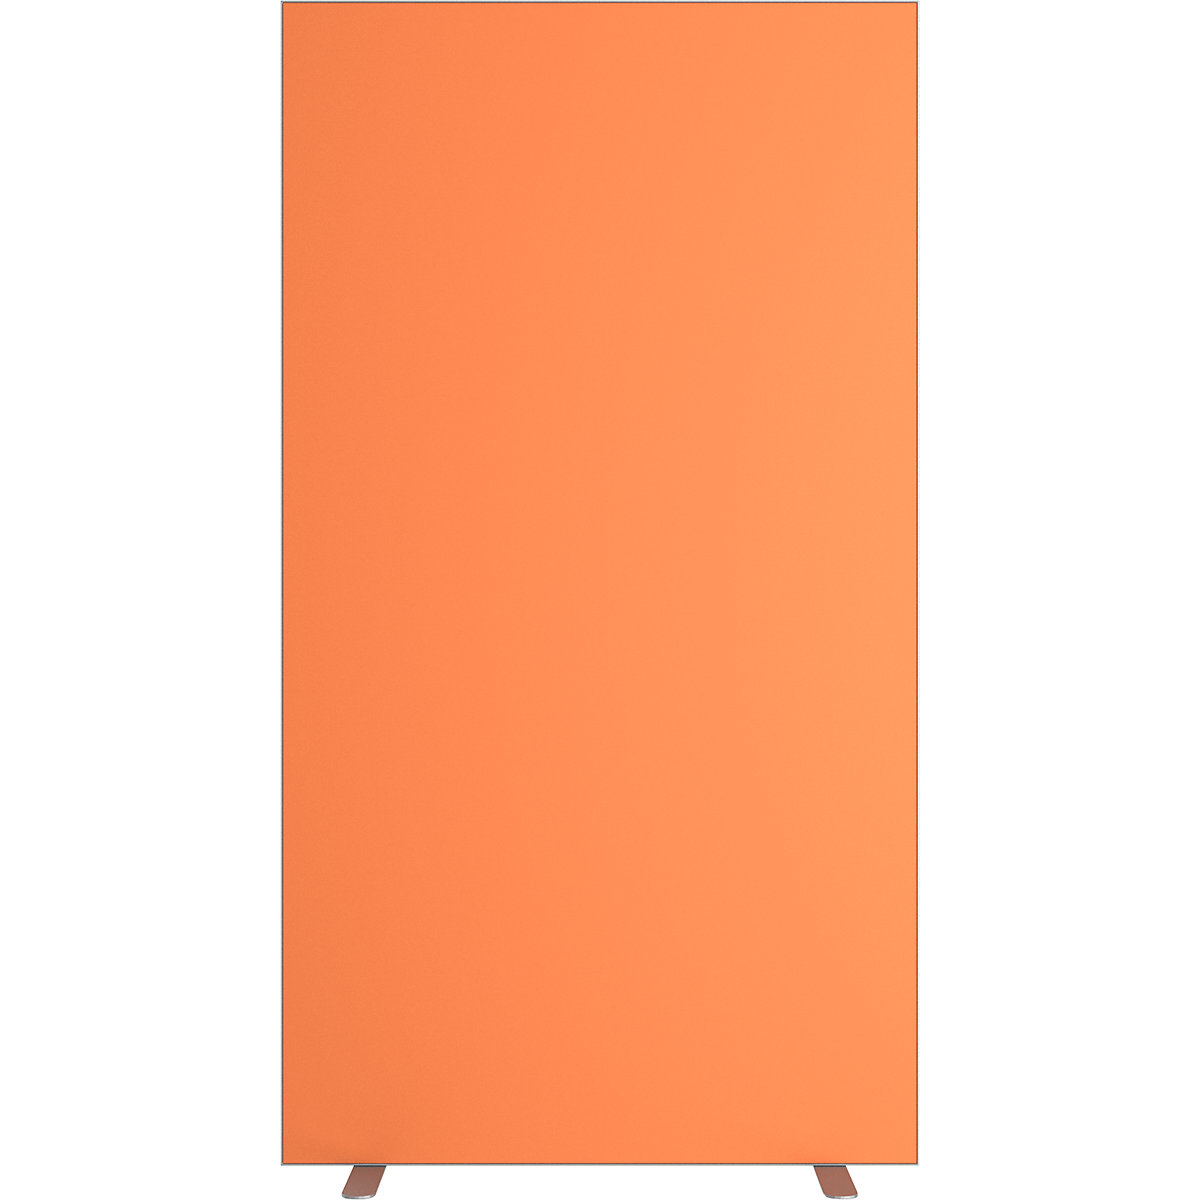 Parete divisoria easyScreen, tinta unita, con protezione acustica, arancione, larghezza 940 mm-12